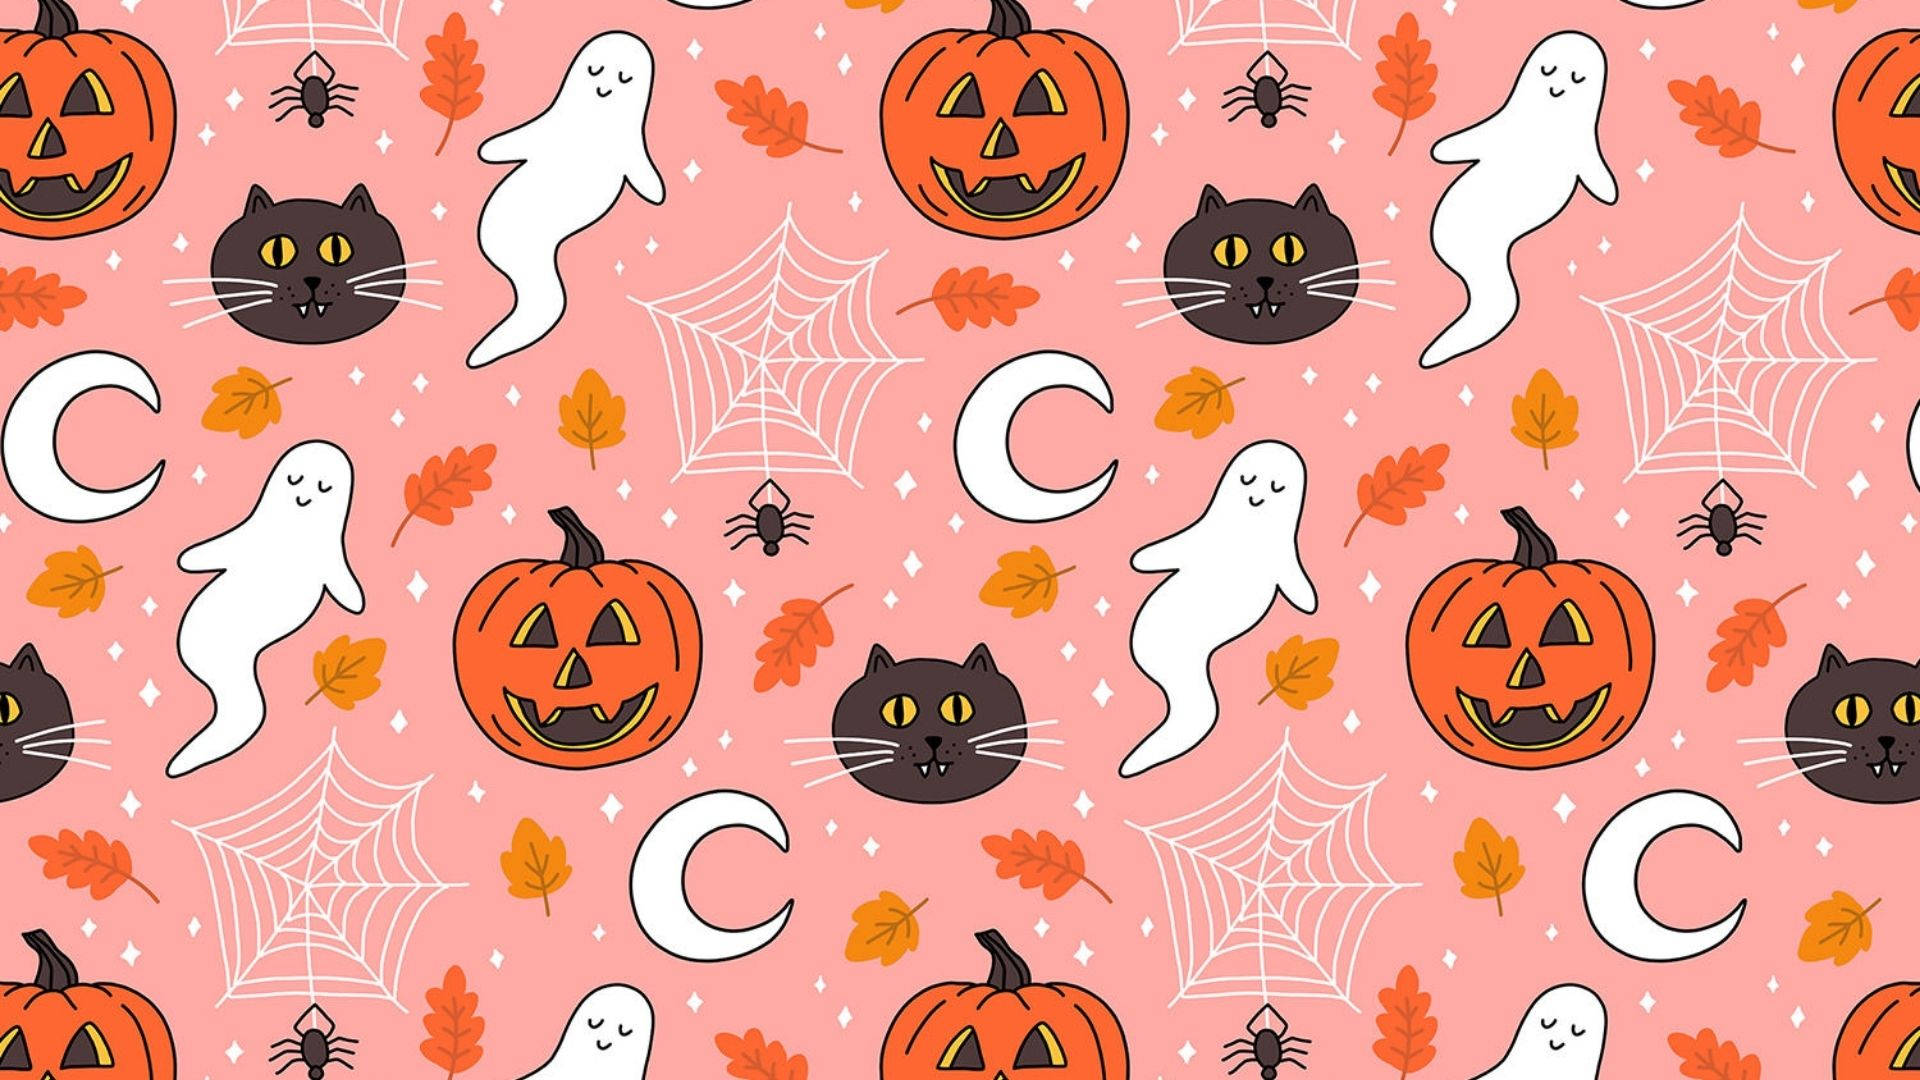 Download Floating Cartoon Halloween Characters Wallpaper